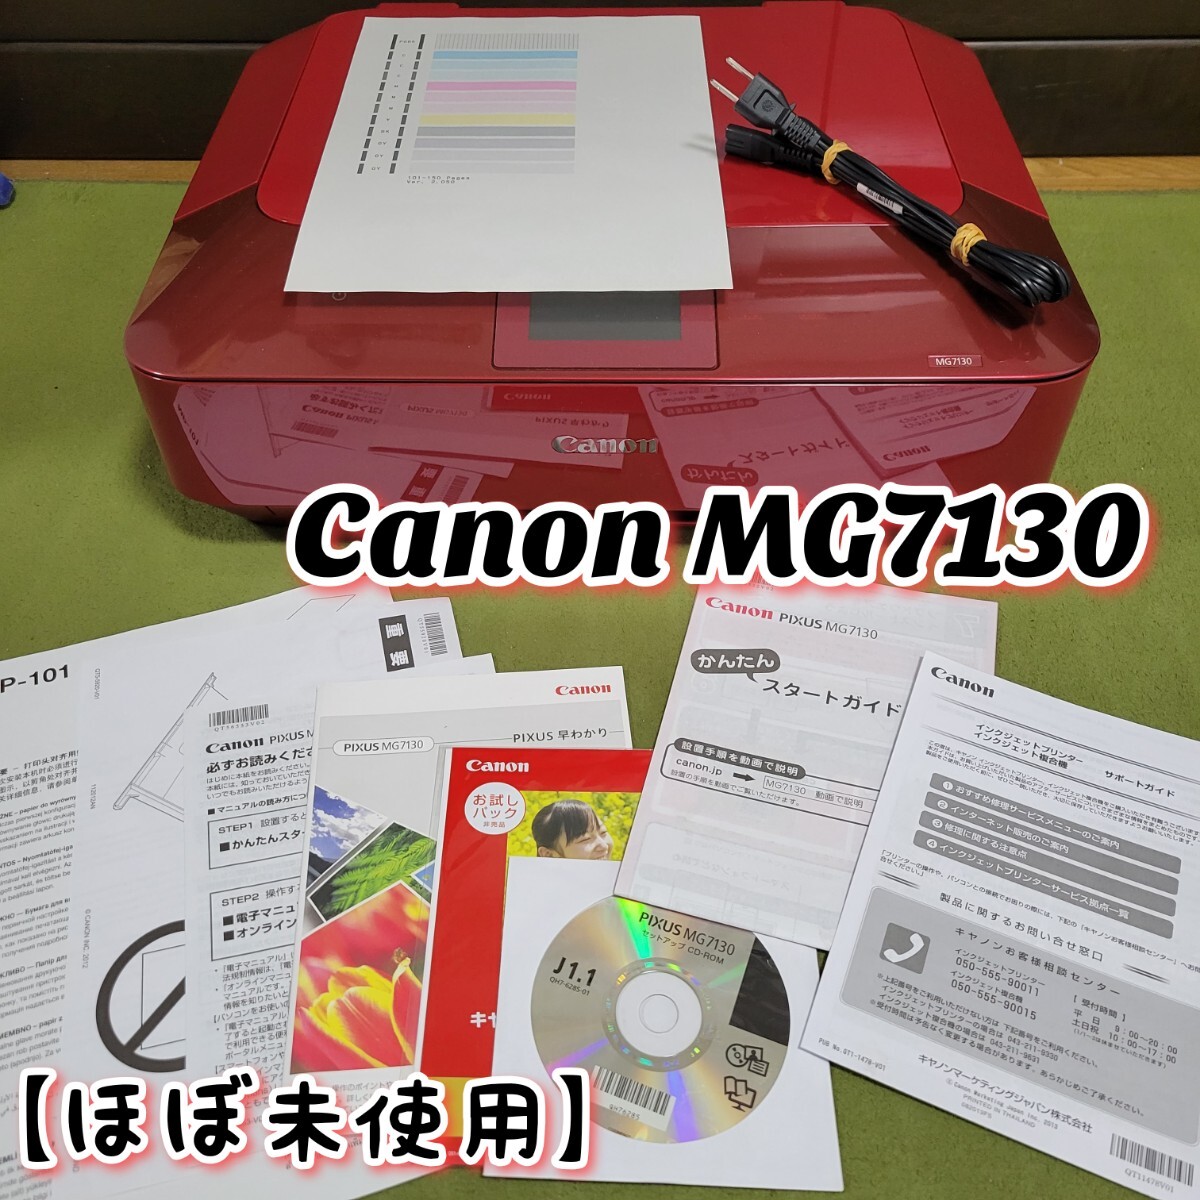 【ほぼ未使用の貴重品】 Canon キヤノン PIXUS MG7130 インクジェットプリンター 複合機 キャノン_画像1